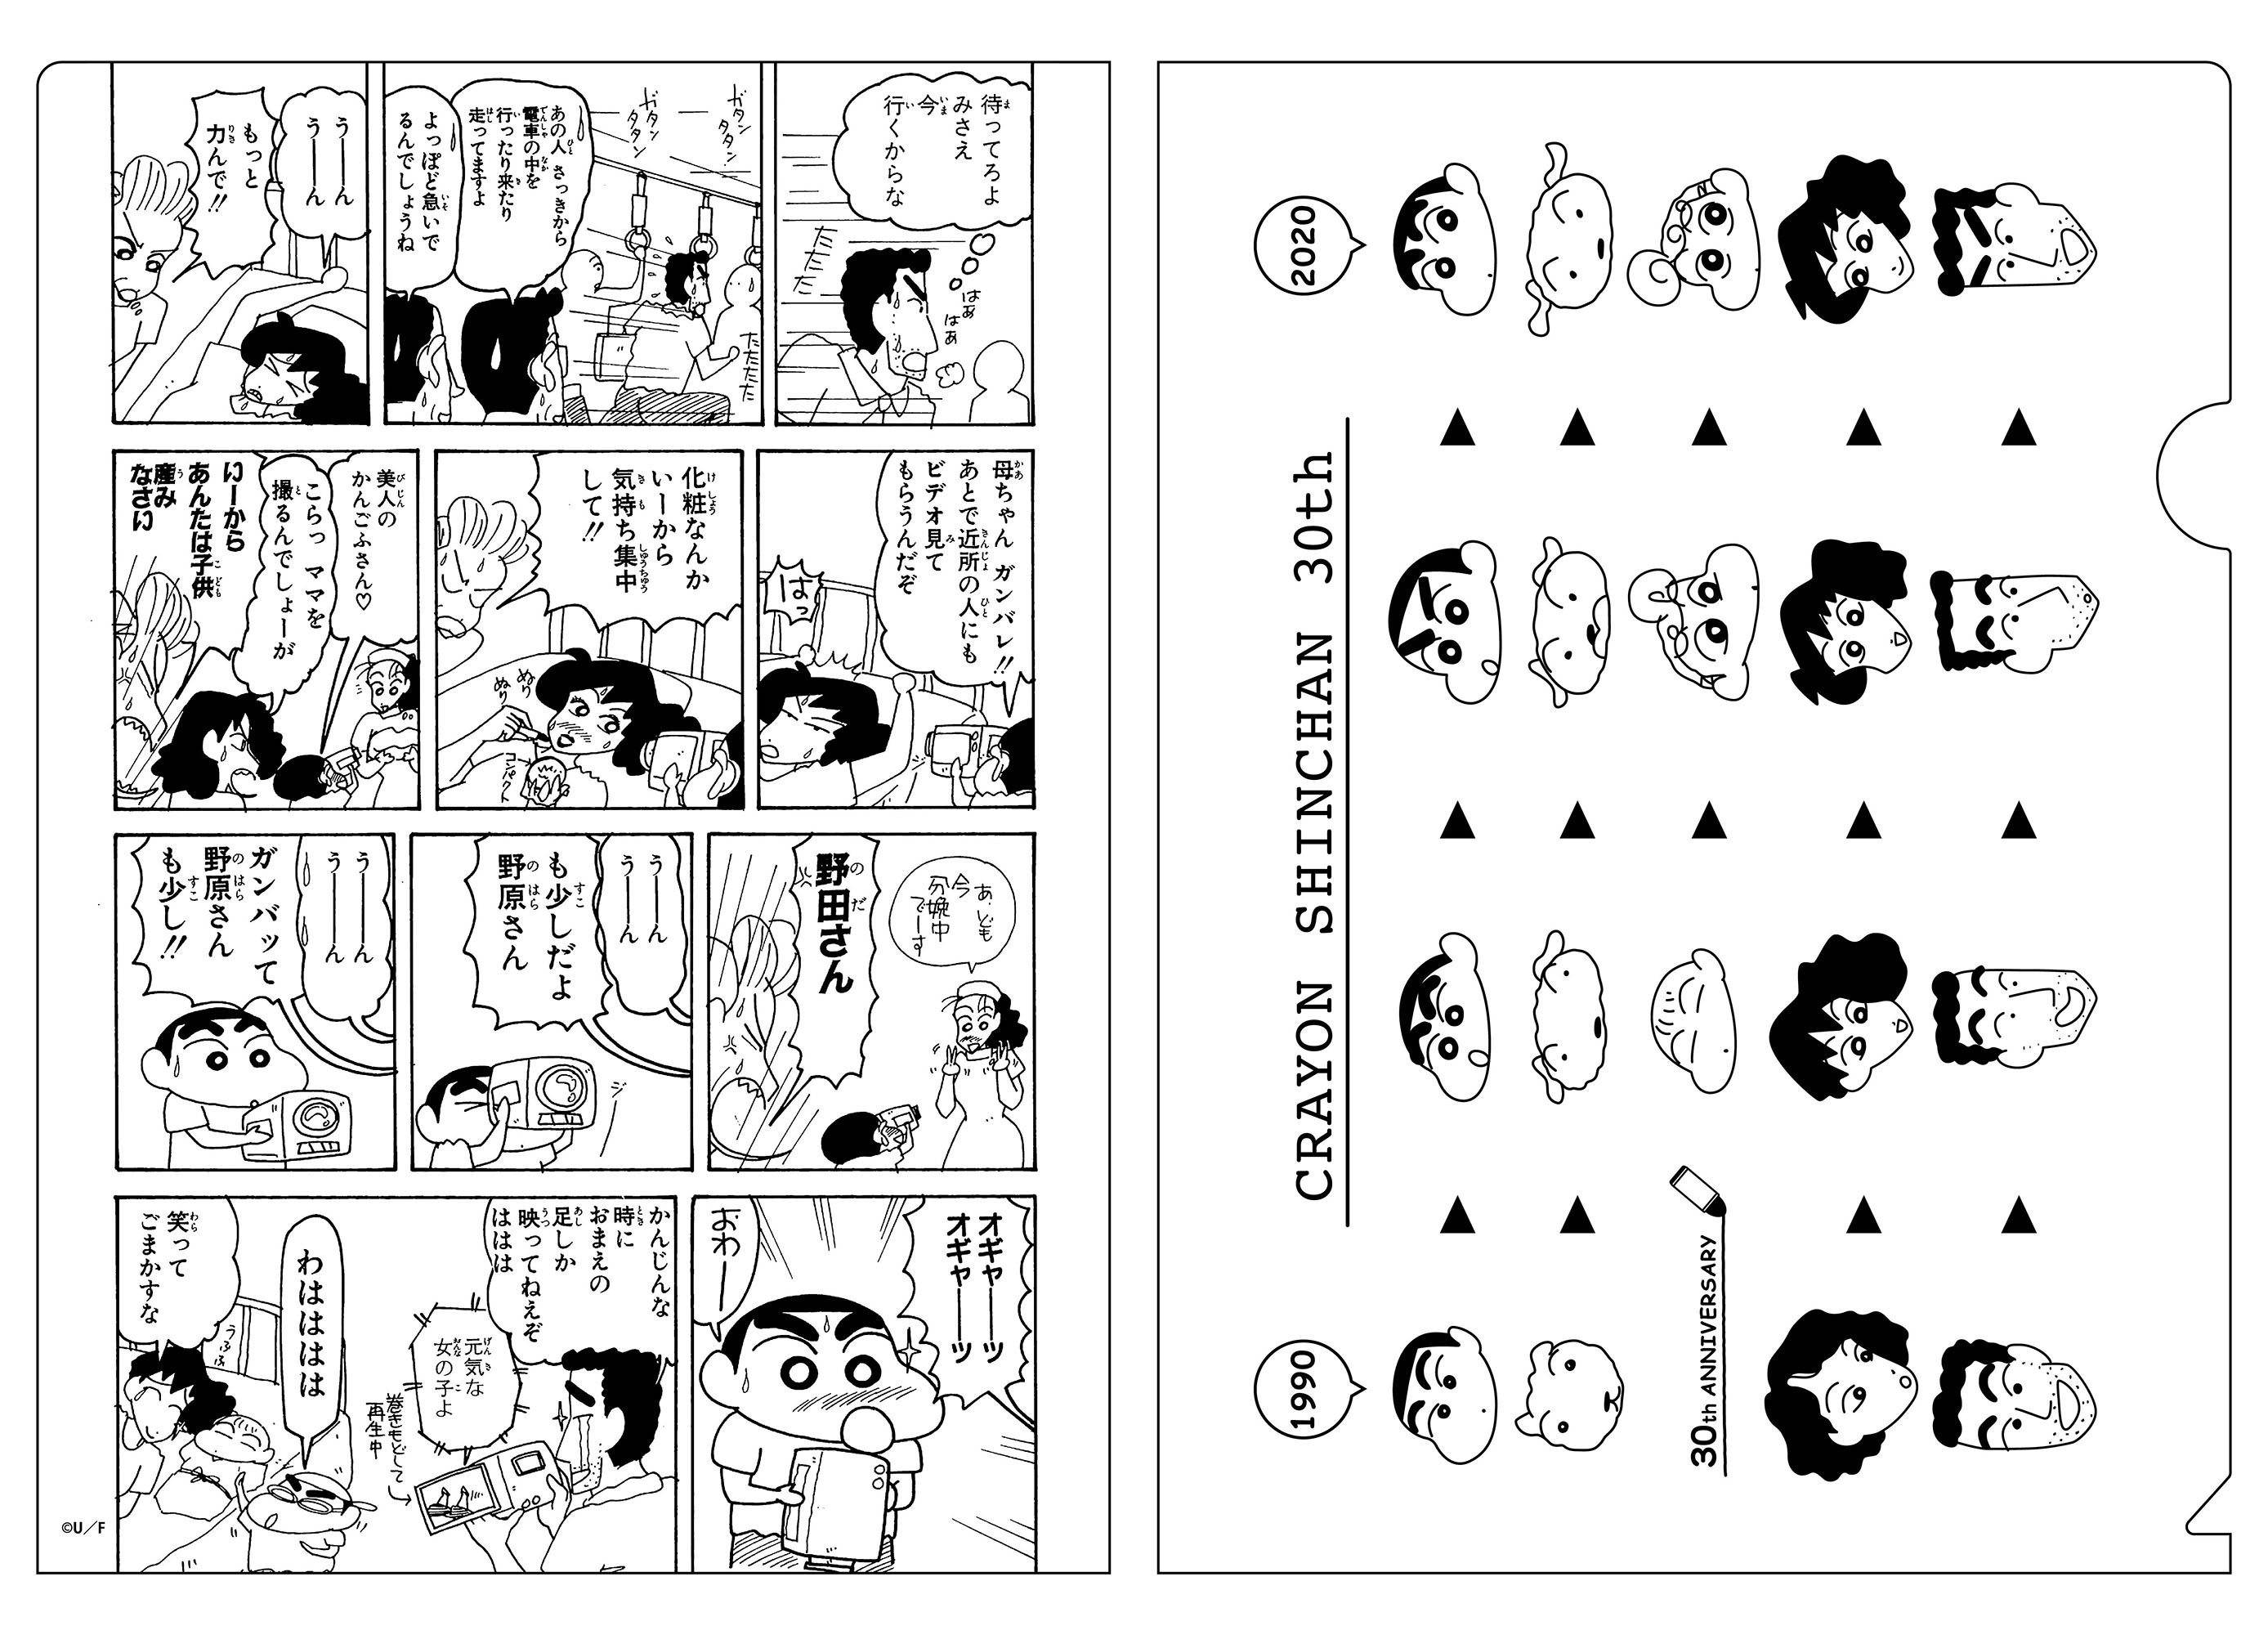 クレヨンしんちゃん クリアファイル 30周年 歴代 双葉社オンラインストア